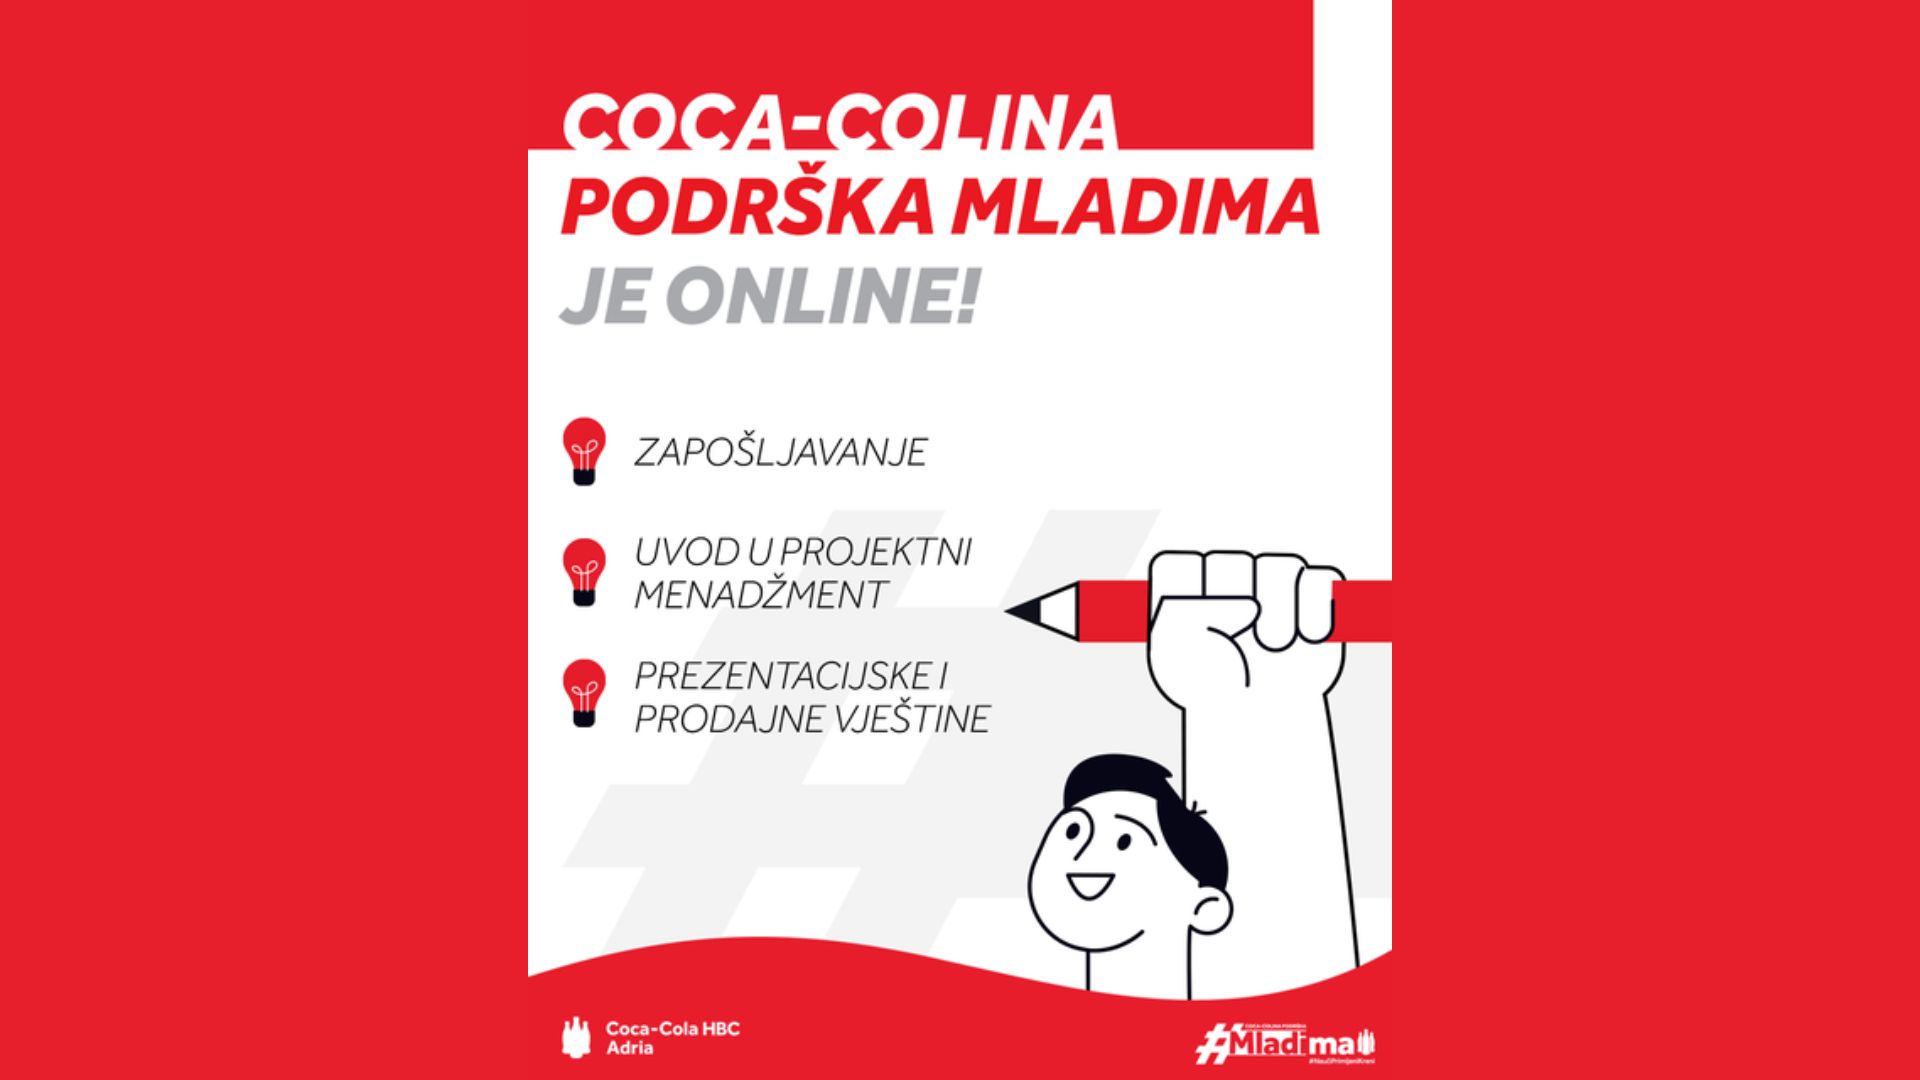 Besplatne edukacije u sklopu Coca-Coline podrške mladima